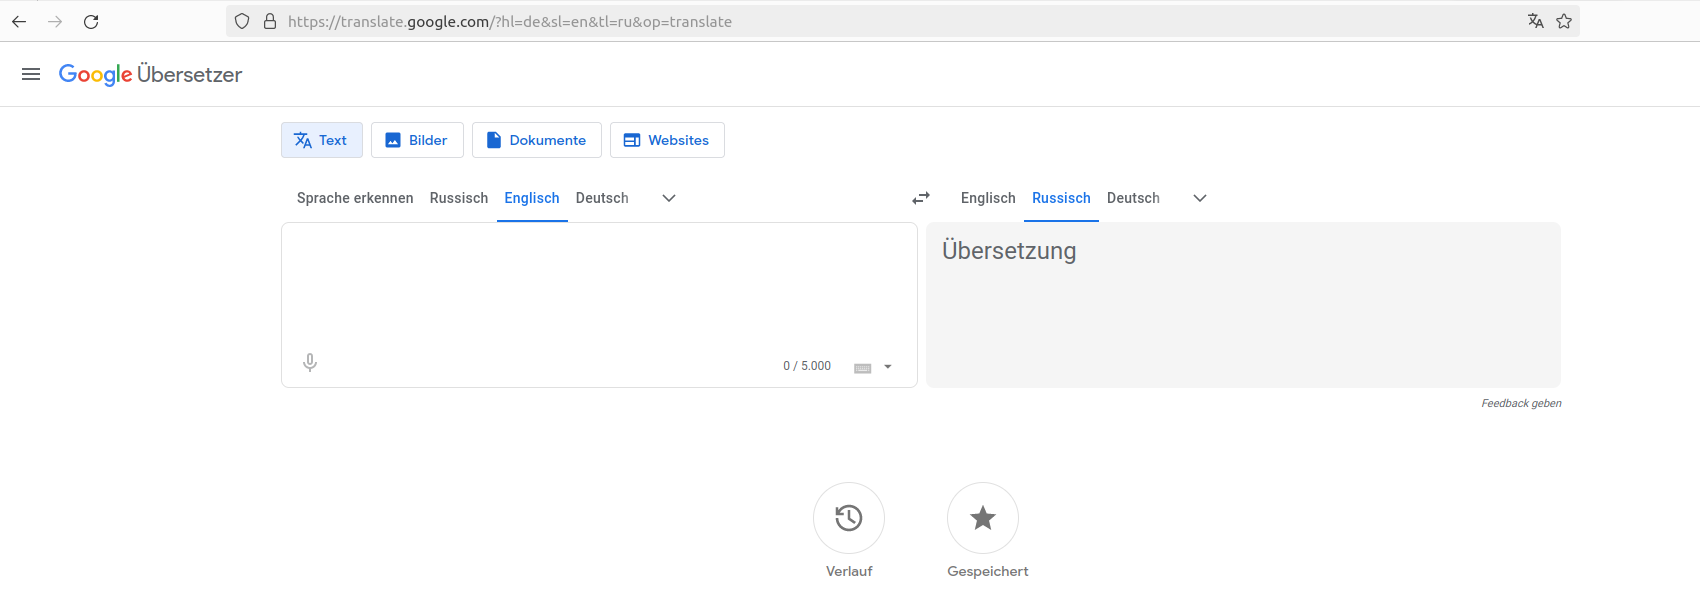  Google Übersetzer - Bildschirmfoto der Benutzeroberfläche